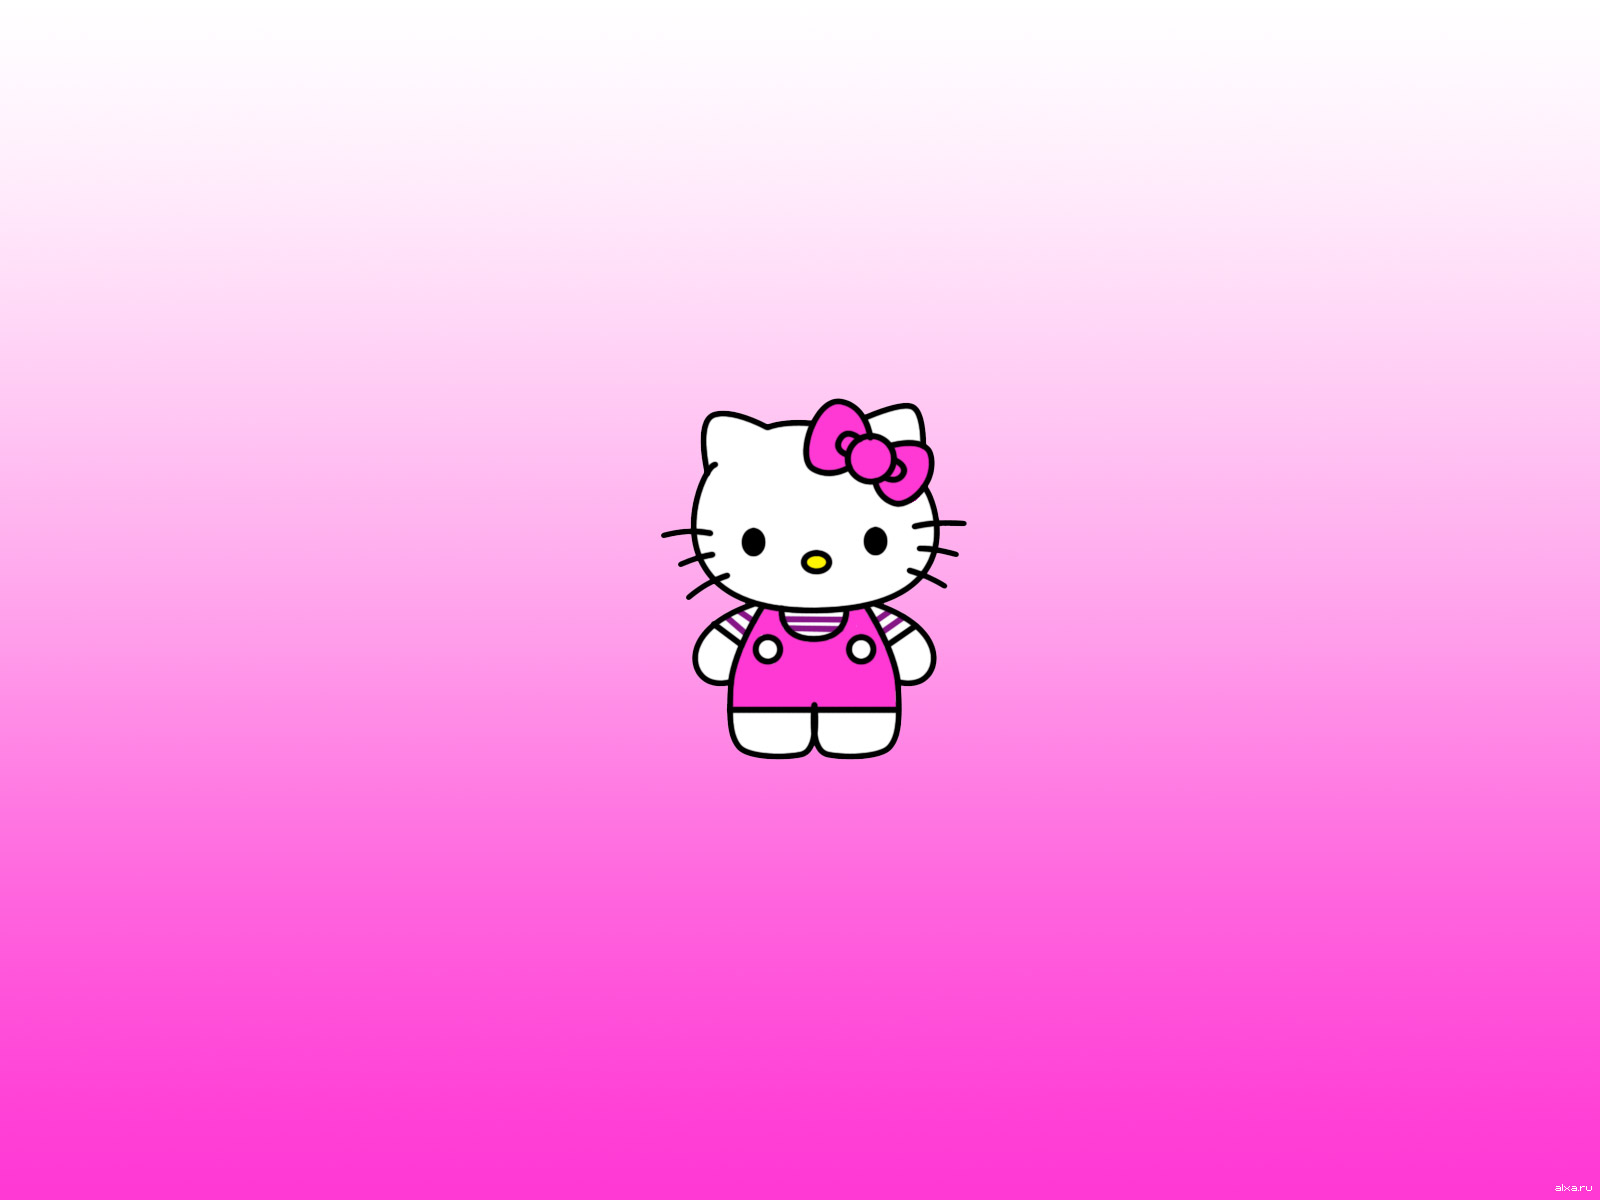  Hello  Kitty  Desktop Wallpapers  PixelsTalk Net